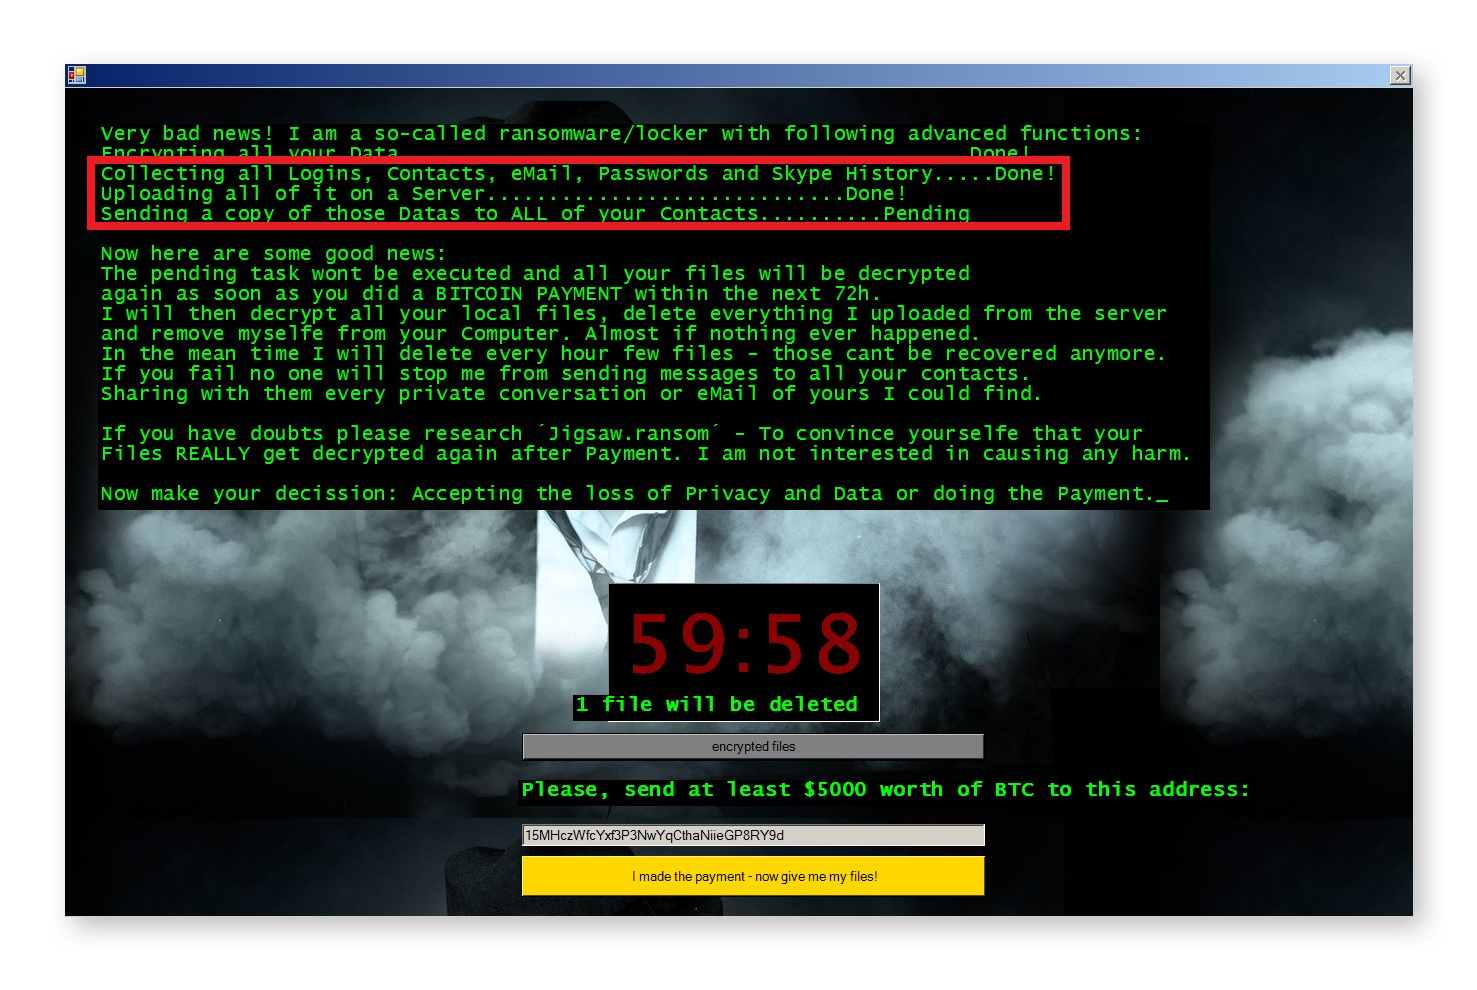 Ameaça de doxxing por malware.